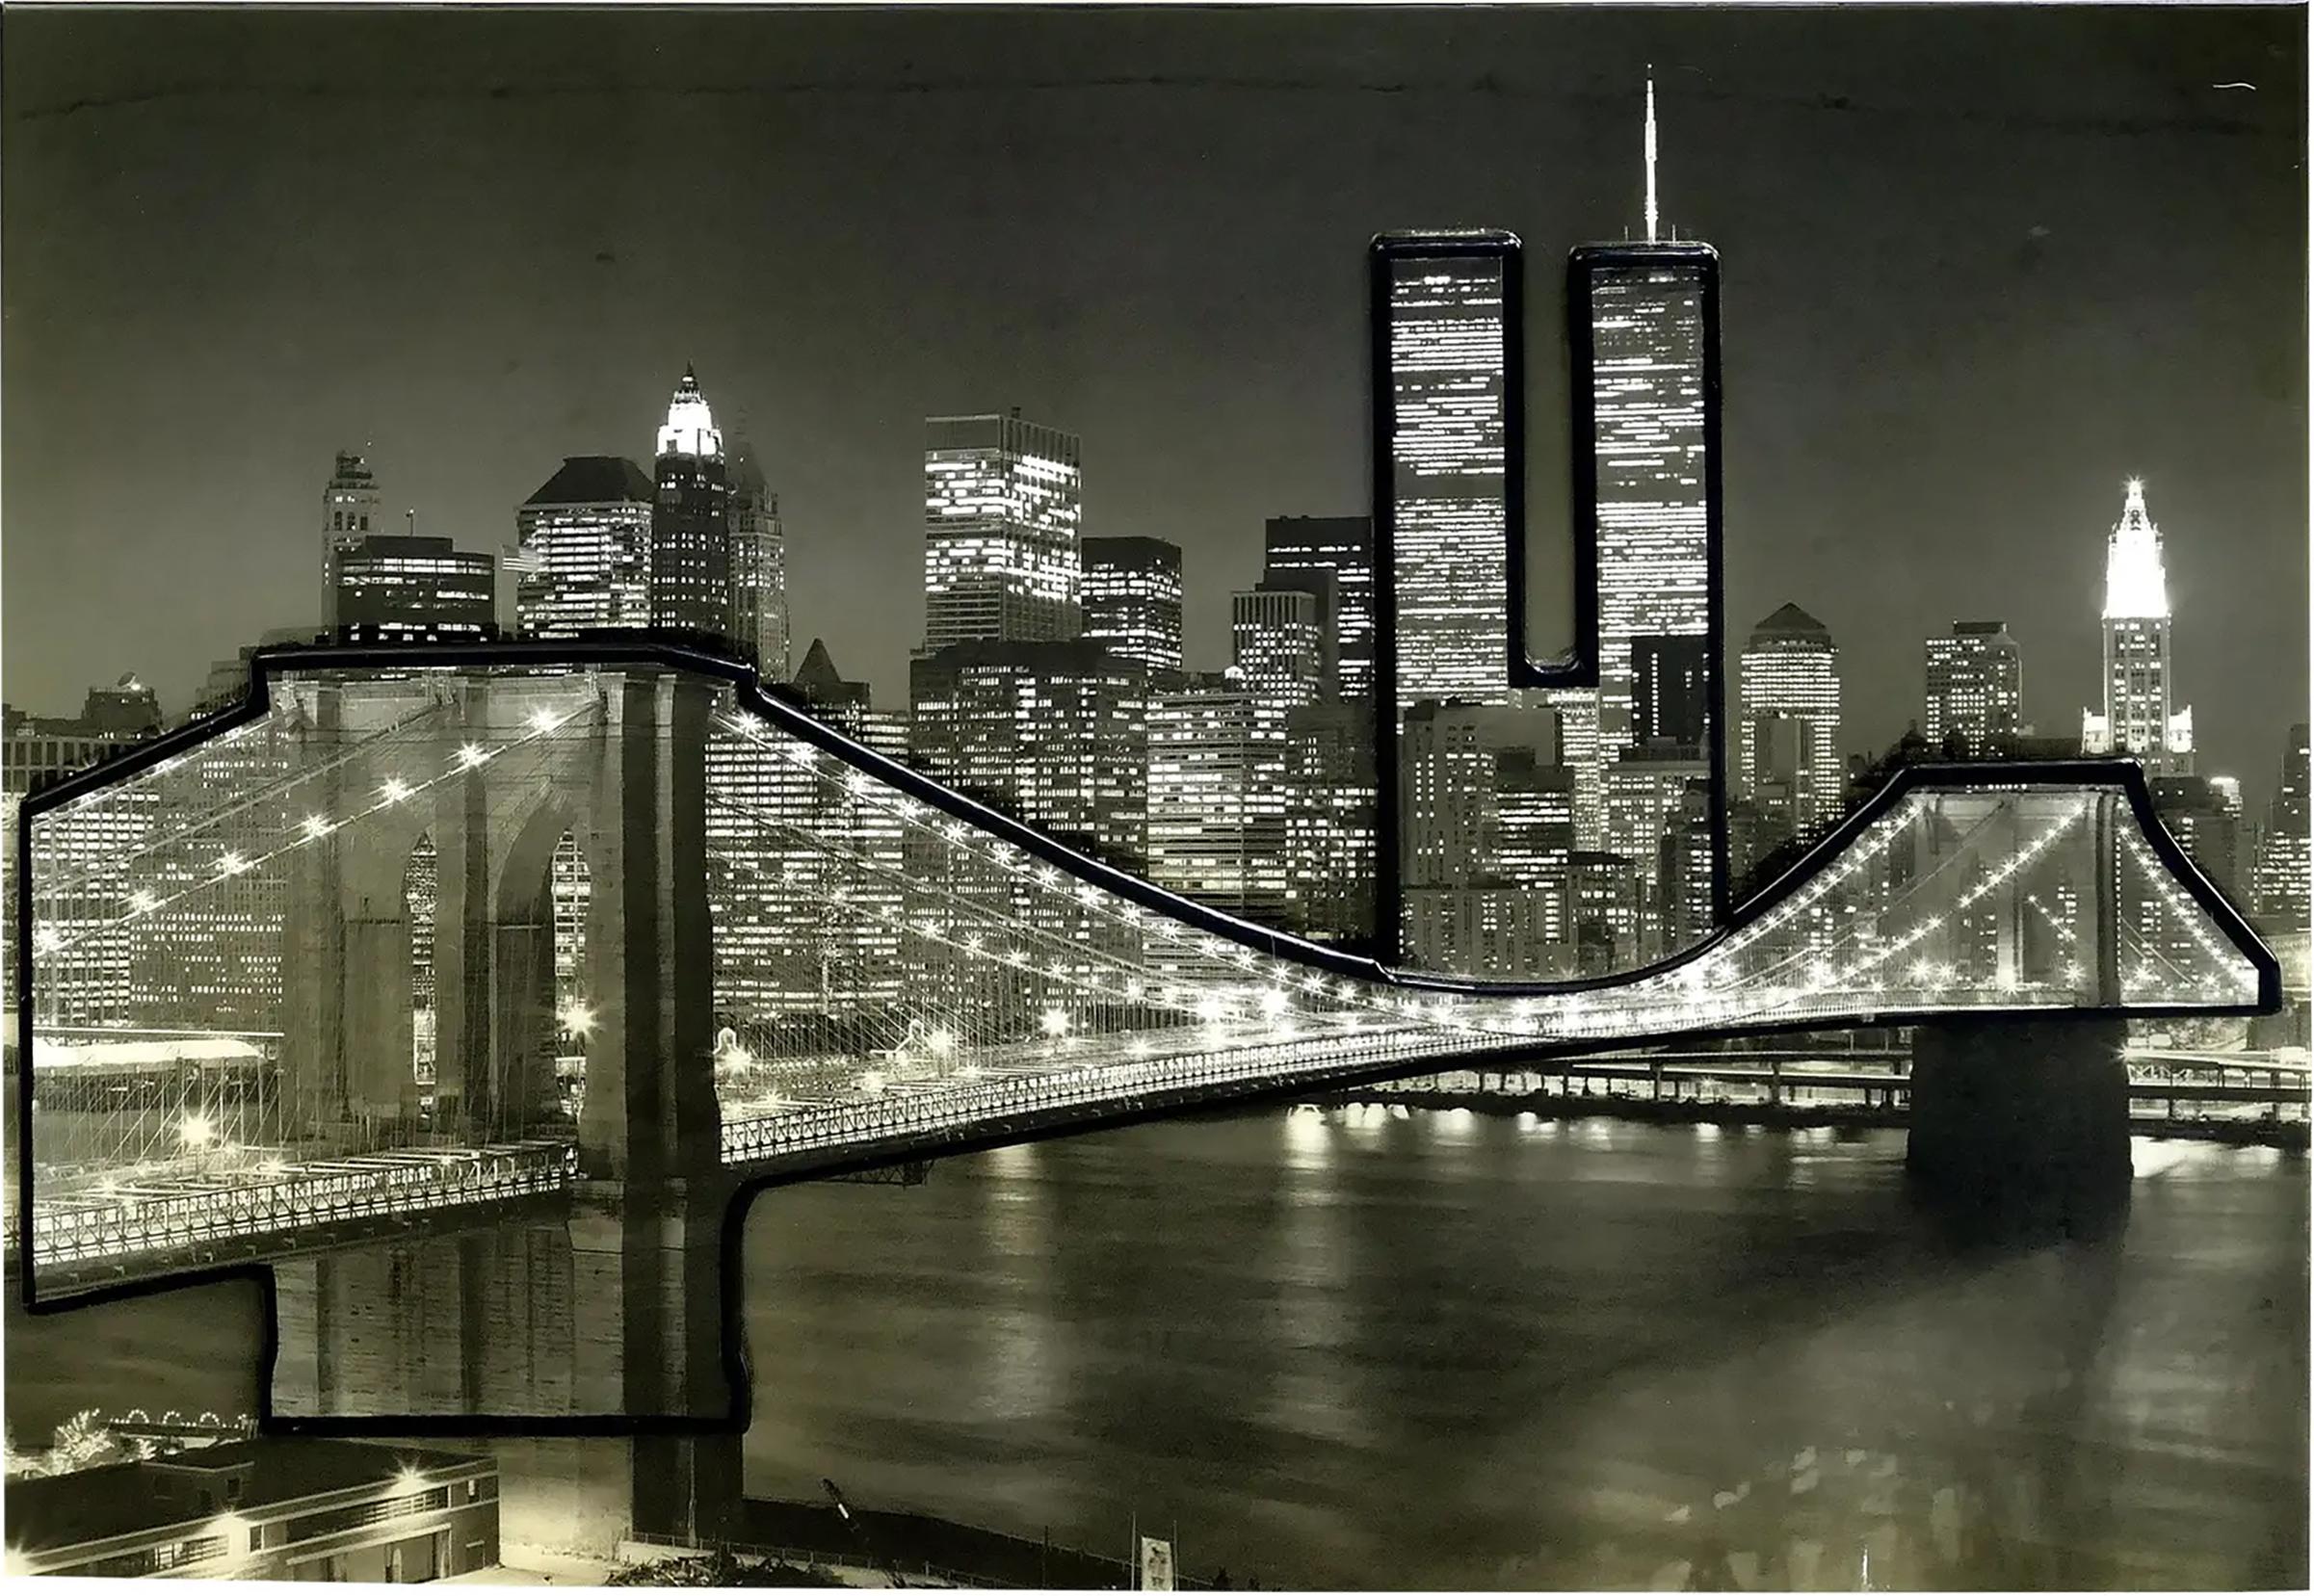 




Gerahmtes dreidimensionales Foto der Skyline von New York City mit den Zwillingstürmen 

Zum Verkauf angeboten wird eine gerahmte übergroße Schwarz-Weiß-Fotografie von New York City mit der Brooklyn Bridge und einem Blick auf die Twin Towers in